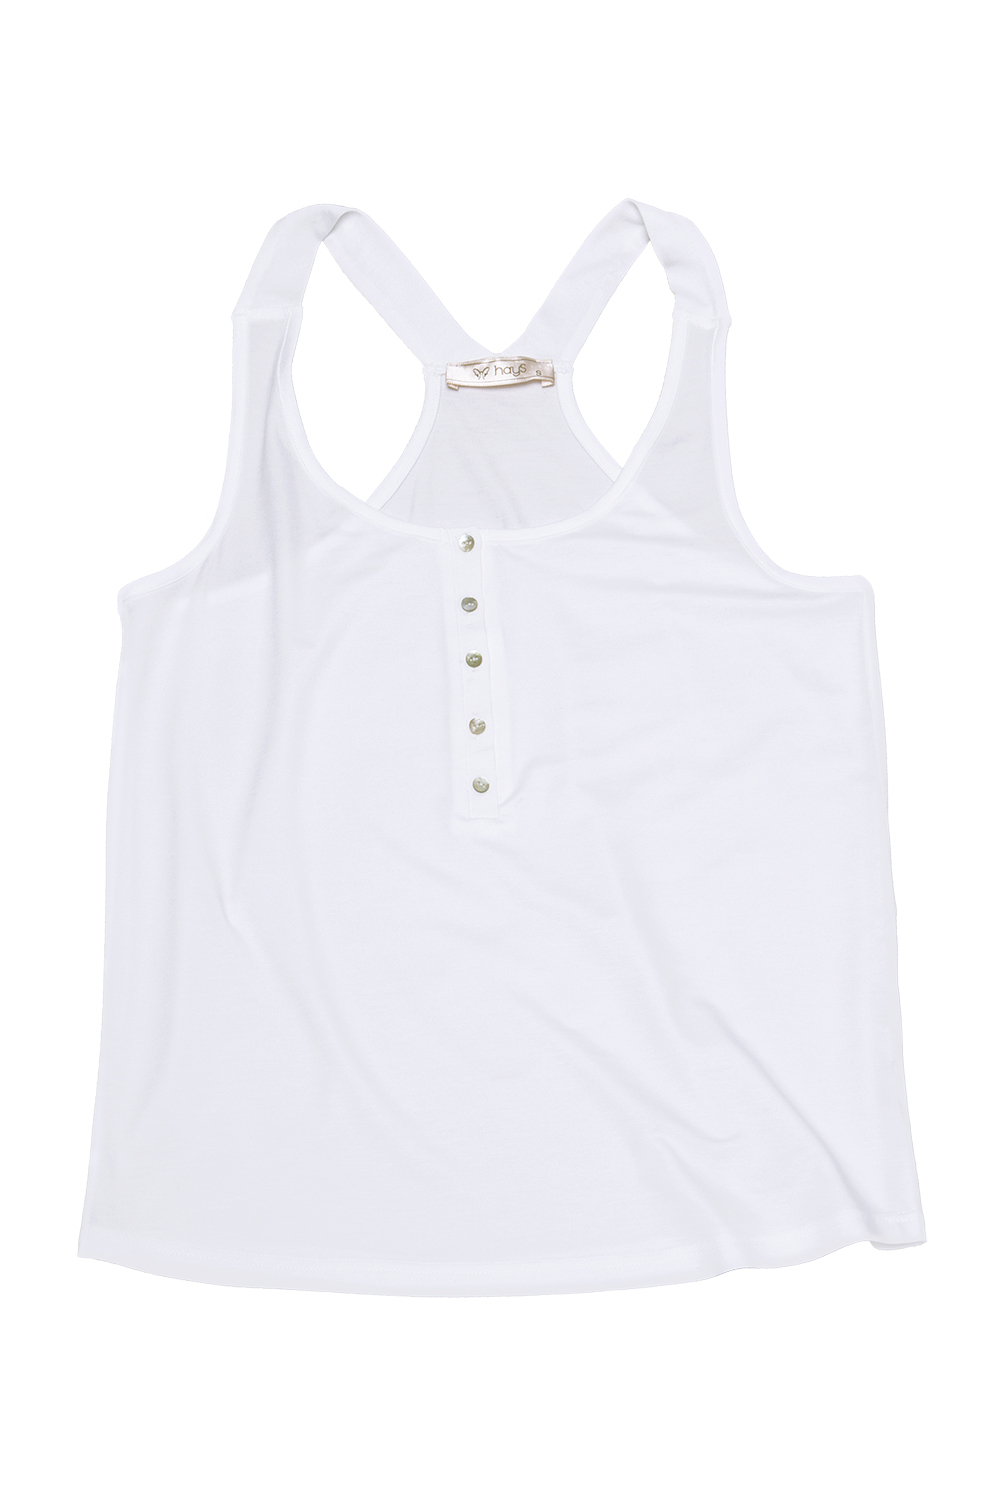 Hays Mix Match Kadın Önden Düğmeli Kalın Askılı Penye T-Shirt